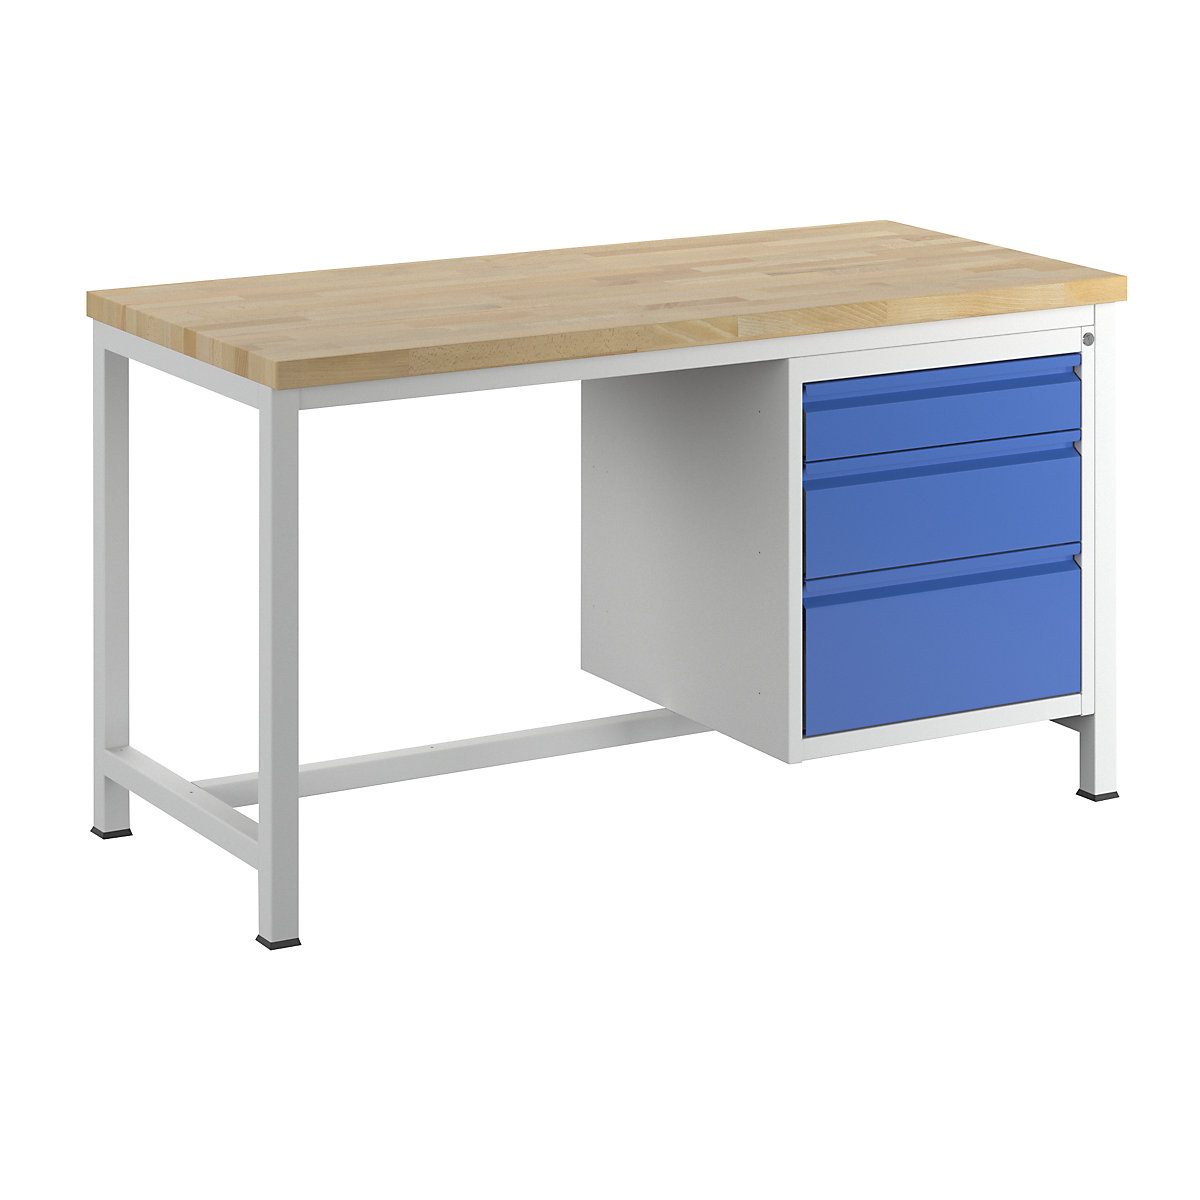 Stół warsztatowy, konstrukcja ramowa – RAU, 3 szuflady rozmiaru L, wys. po 1 x 120/180/240 mm, głęb. 700 mm, szer. 1500 mm-12